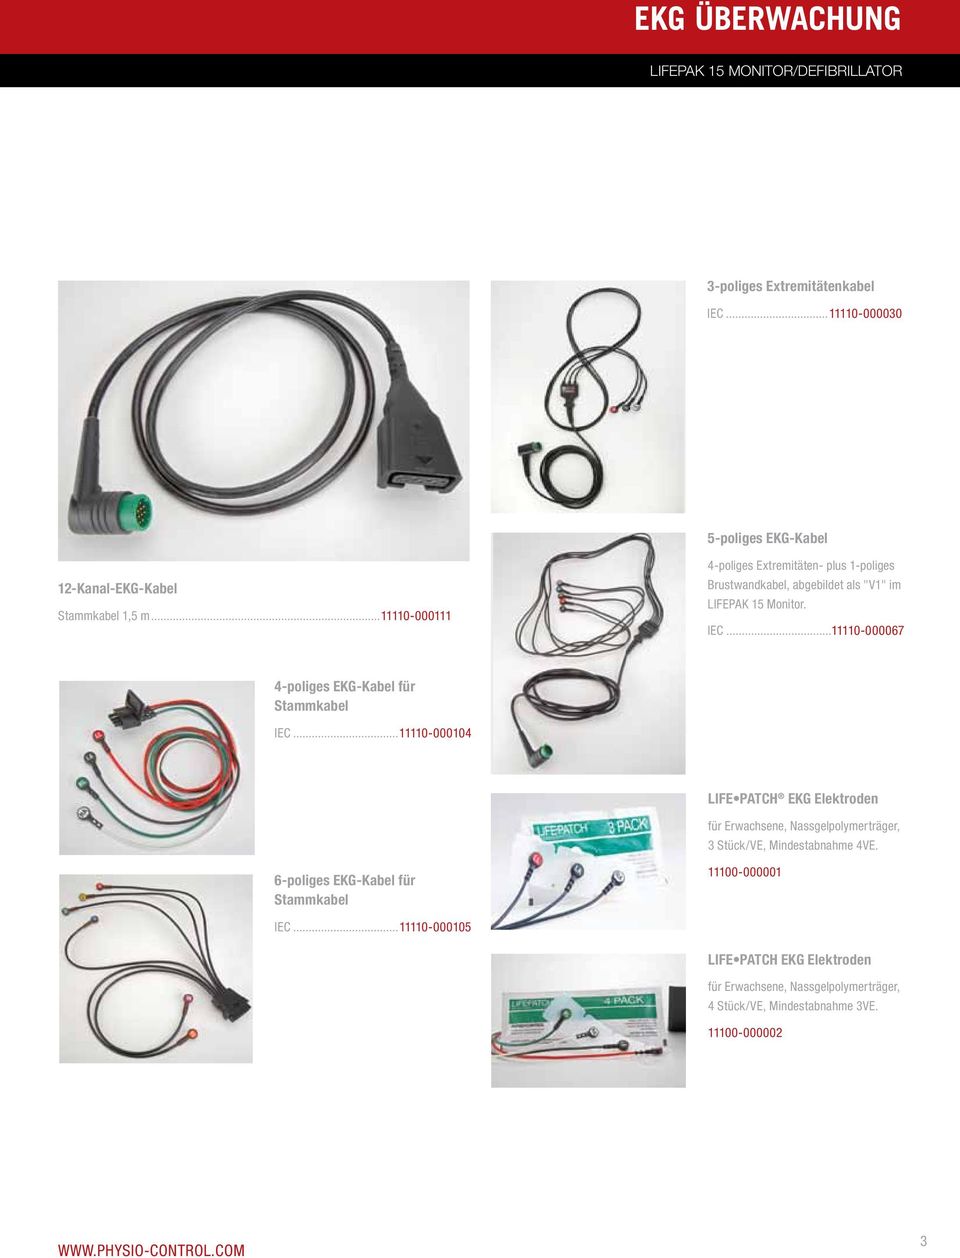 ..11110-000067 4-poliges EKG-Kabel für Stammkabel IEC.